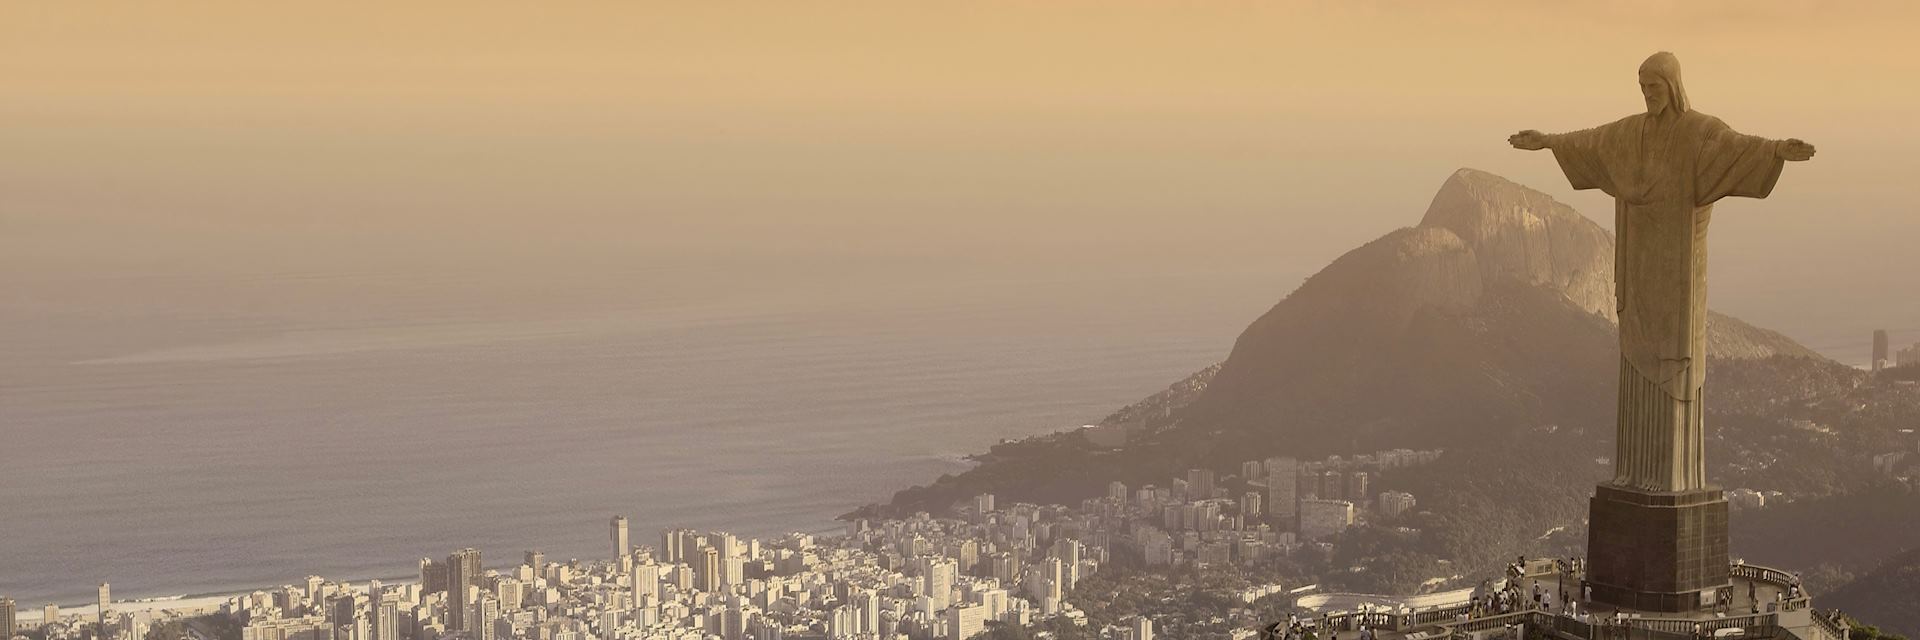 Rio de Janeiro skyline